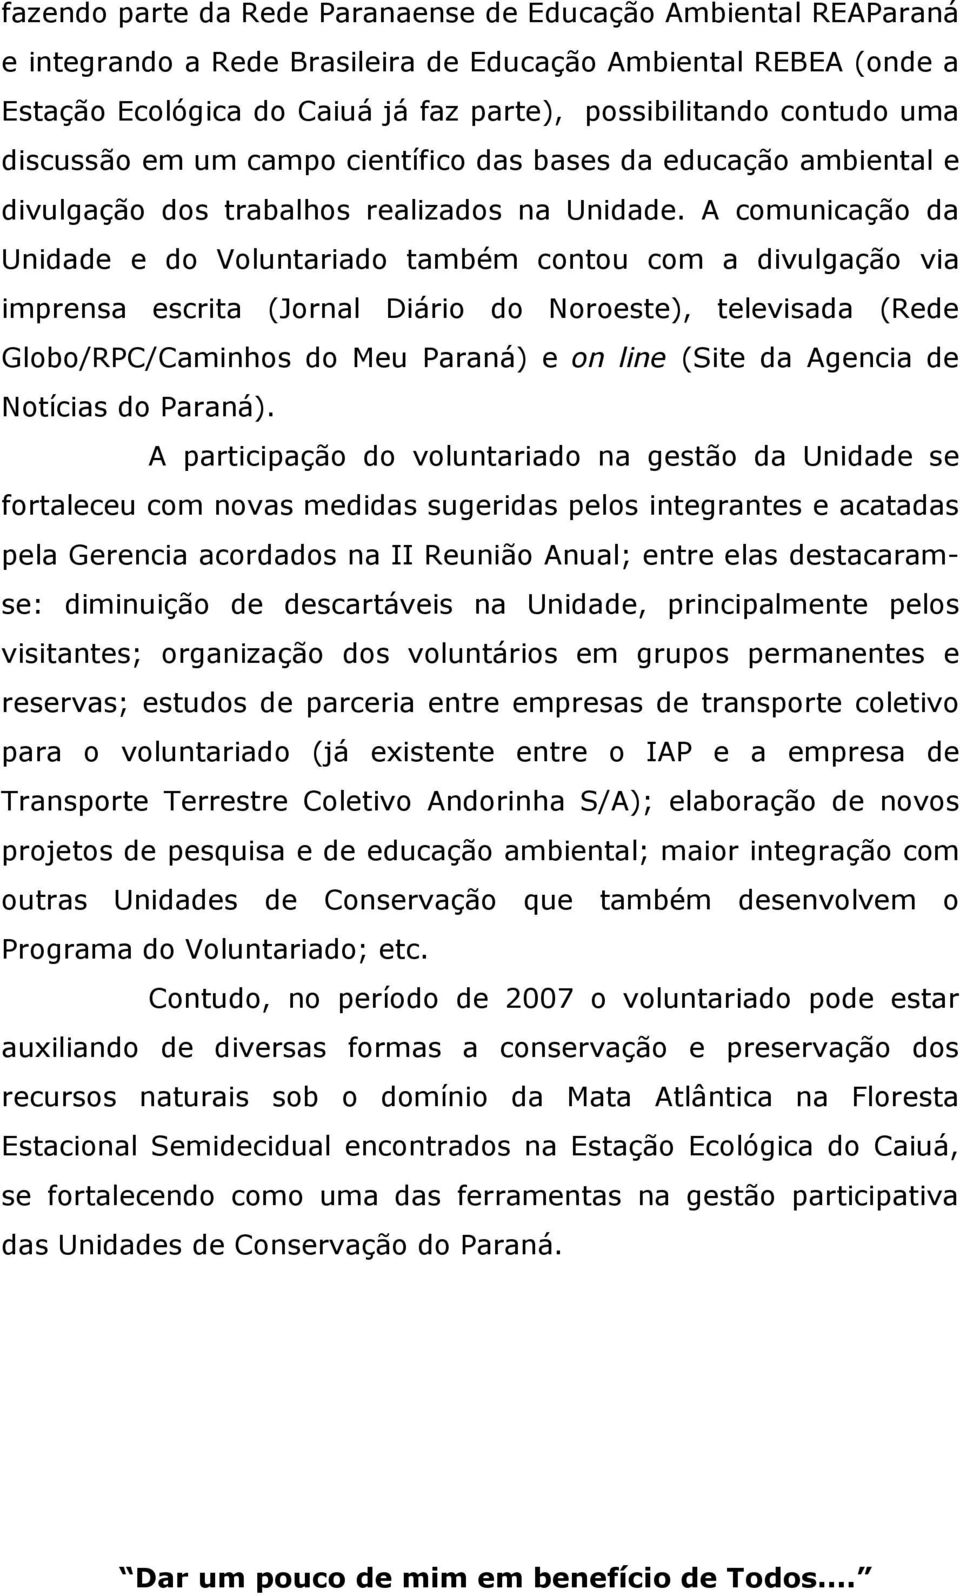 A comunicação da Unidade e do Voluntariado também contou com a divulgação via imprensa escrita (Jornal Diário do Noroeste), televisada (Rede Globo/RPC/Caminhos do Meu Paraná) e on line (Site da